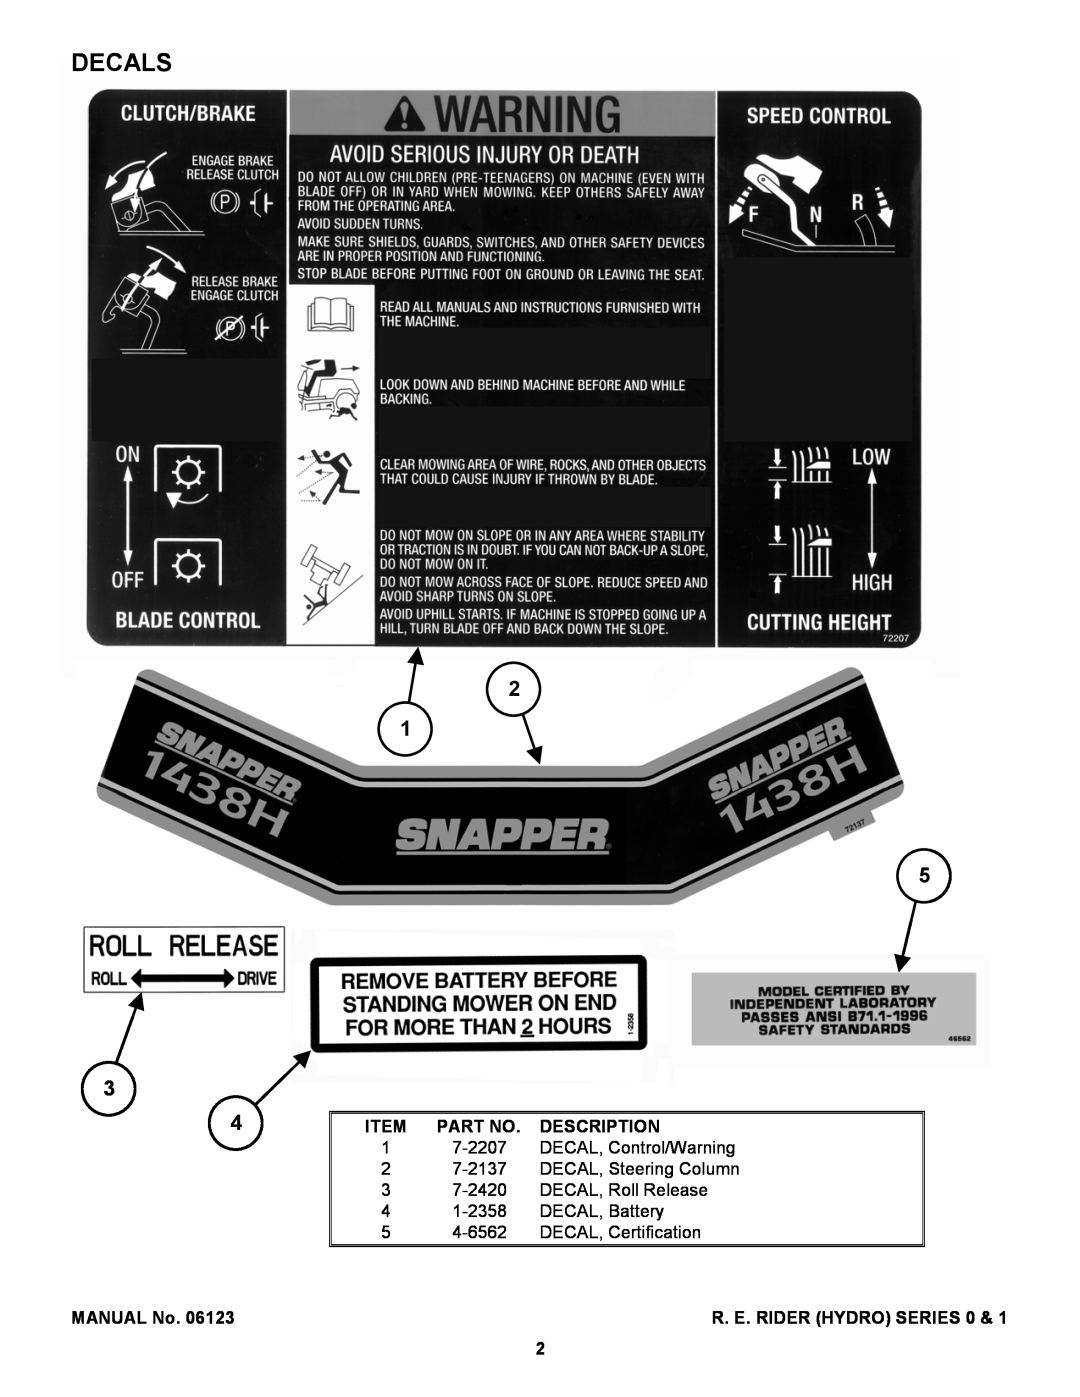 Snapper 381450HBVE manual Decals, MANUAL No, Description, R. E. Rider Hydro Series 